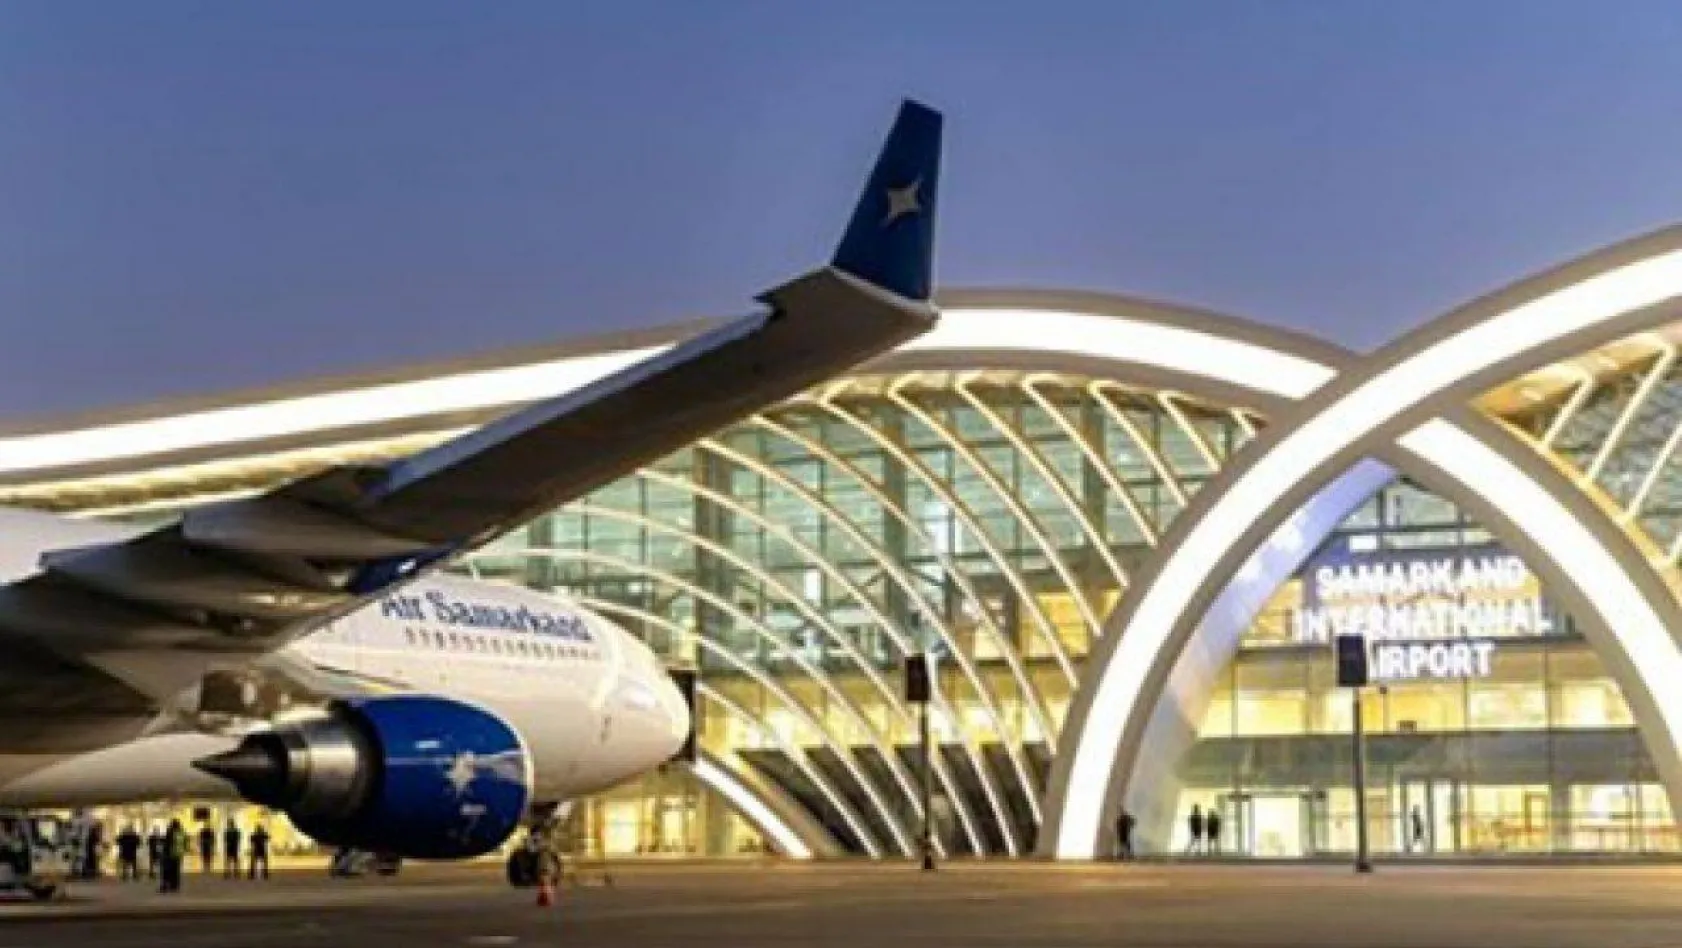 Air Samarkand, tarifeli uçuş programını başlattı